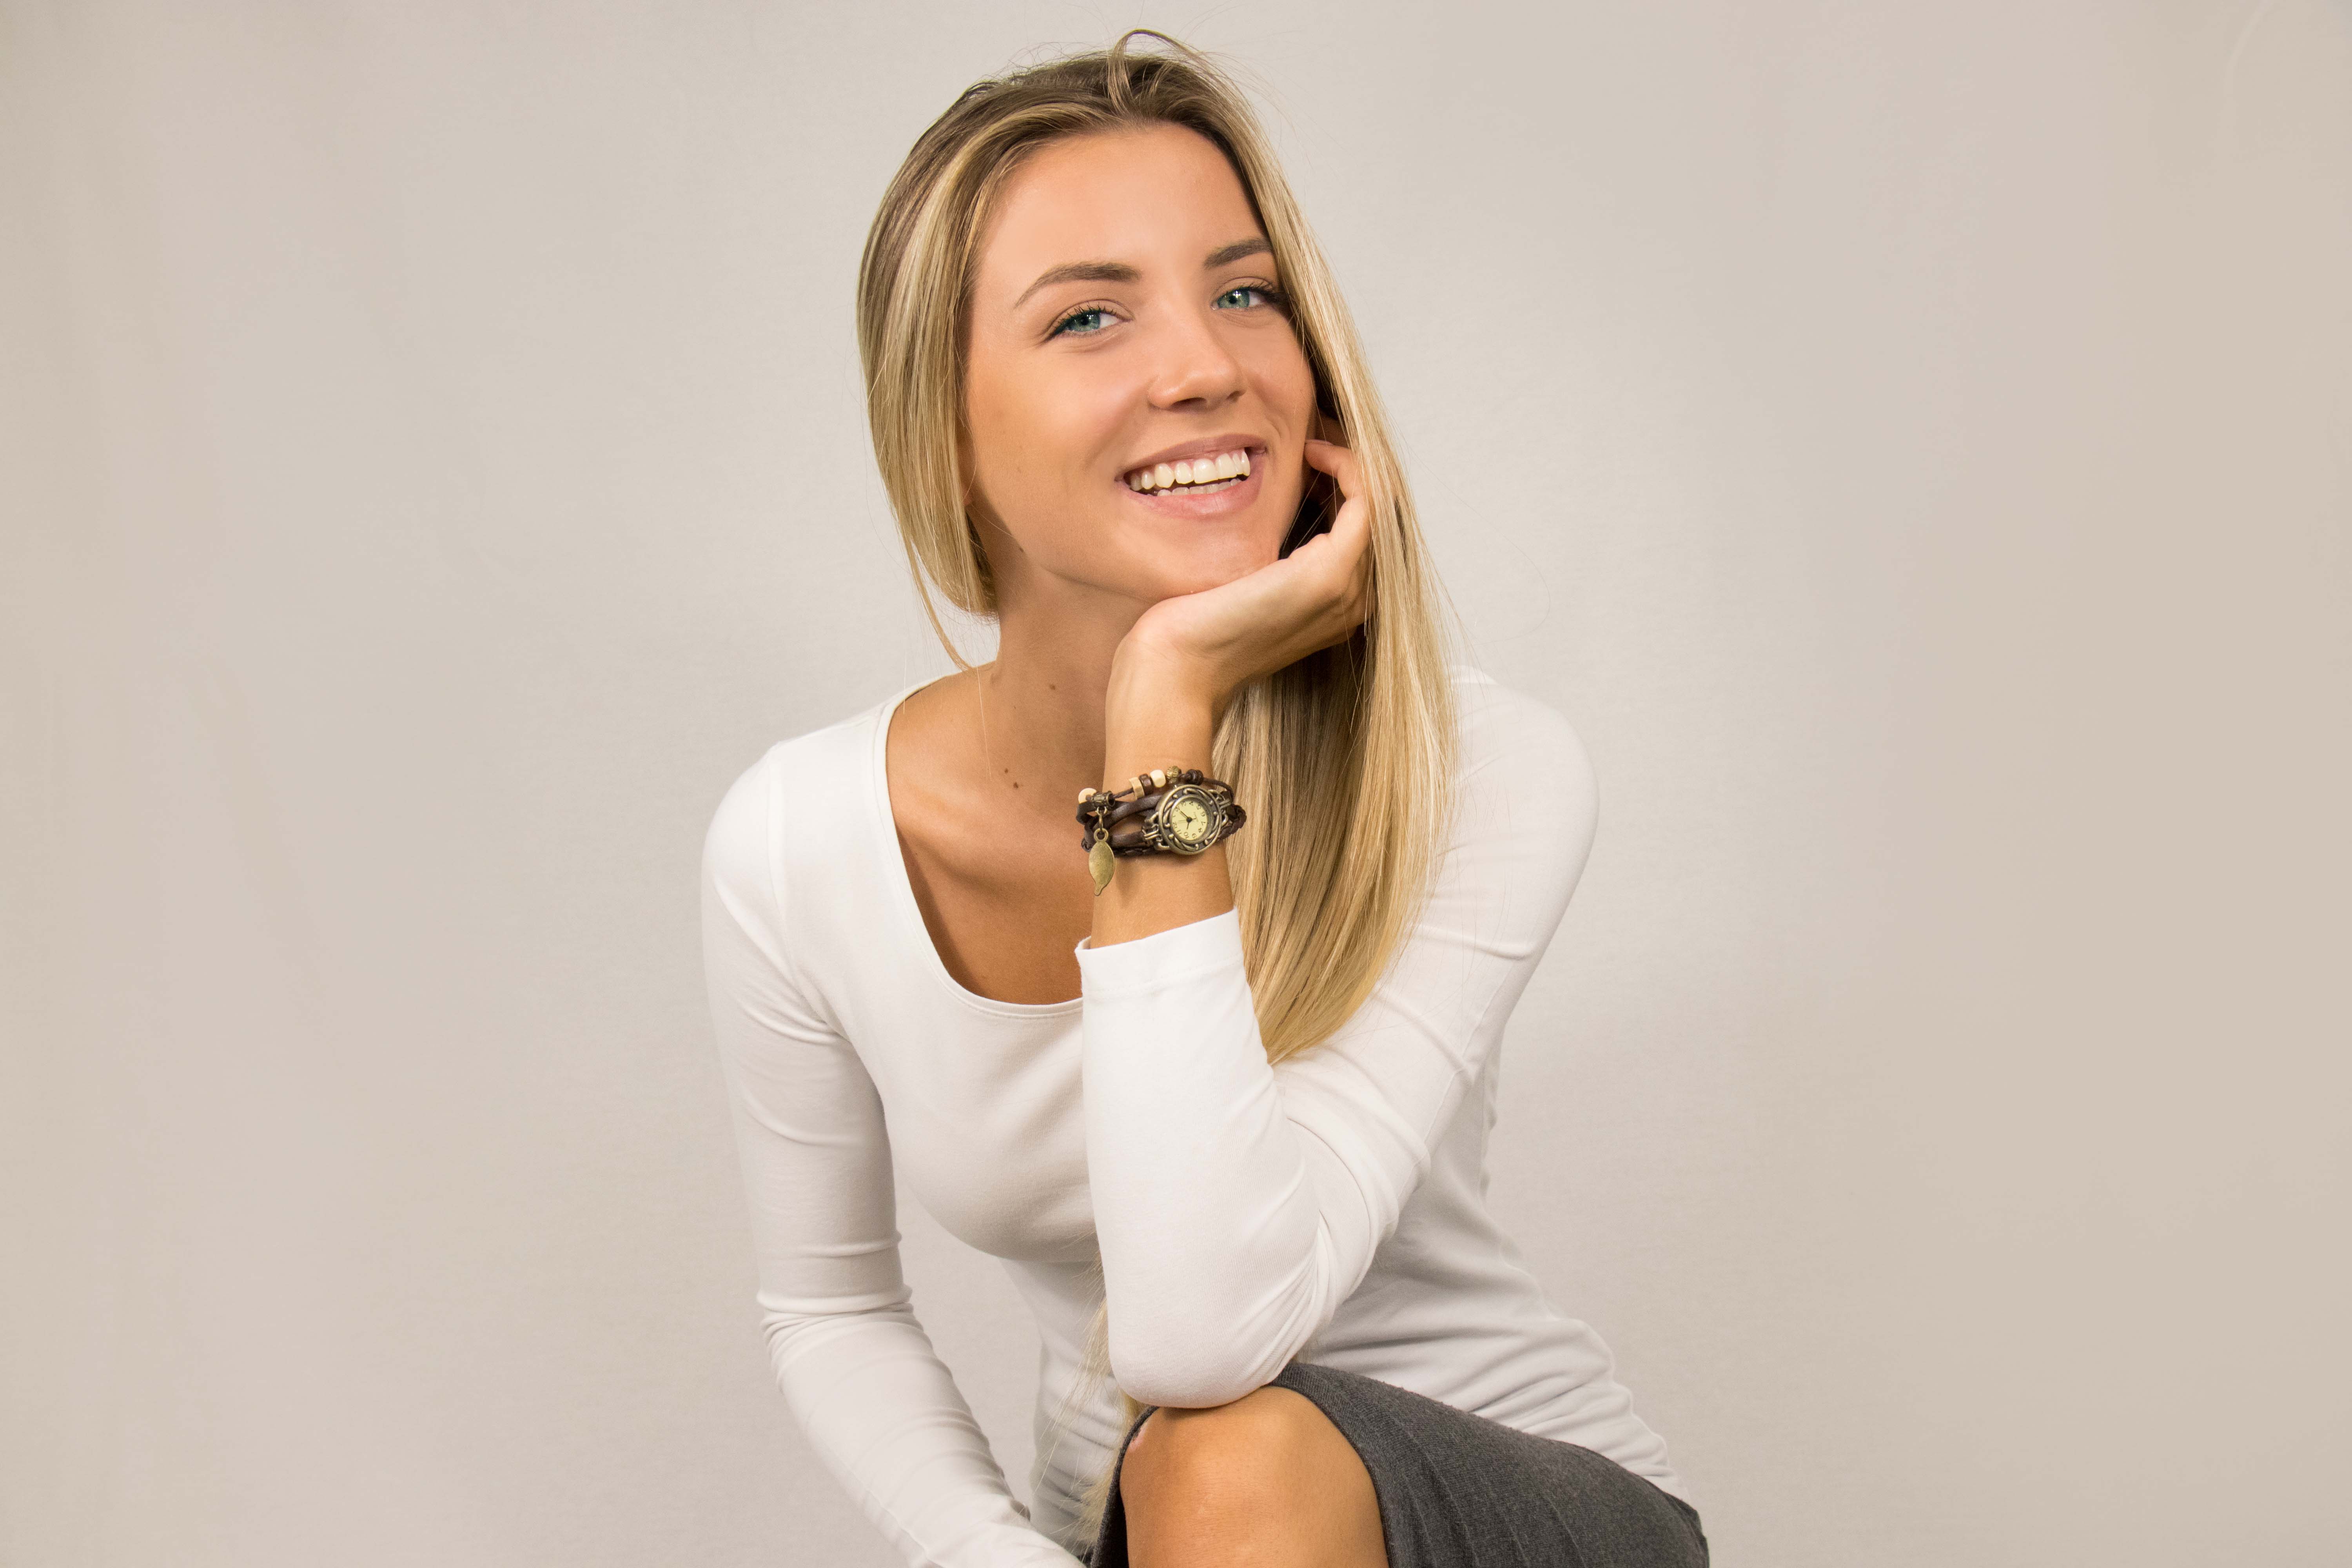 Anastasia Savciuc, Miss AMen: pretendete un sorriso dai vostri camerieri FOTO